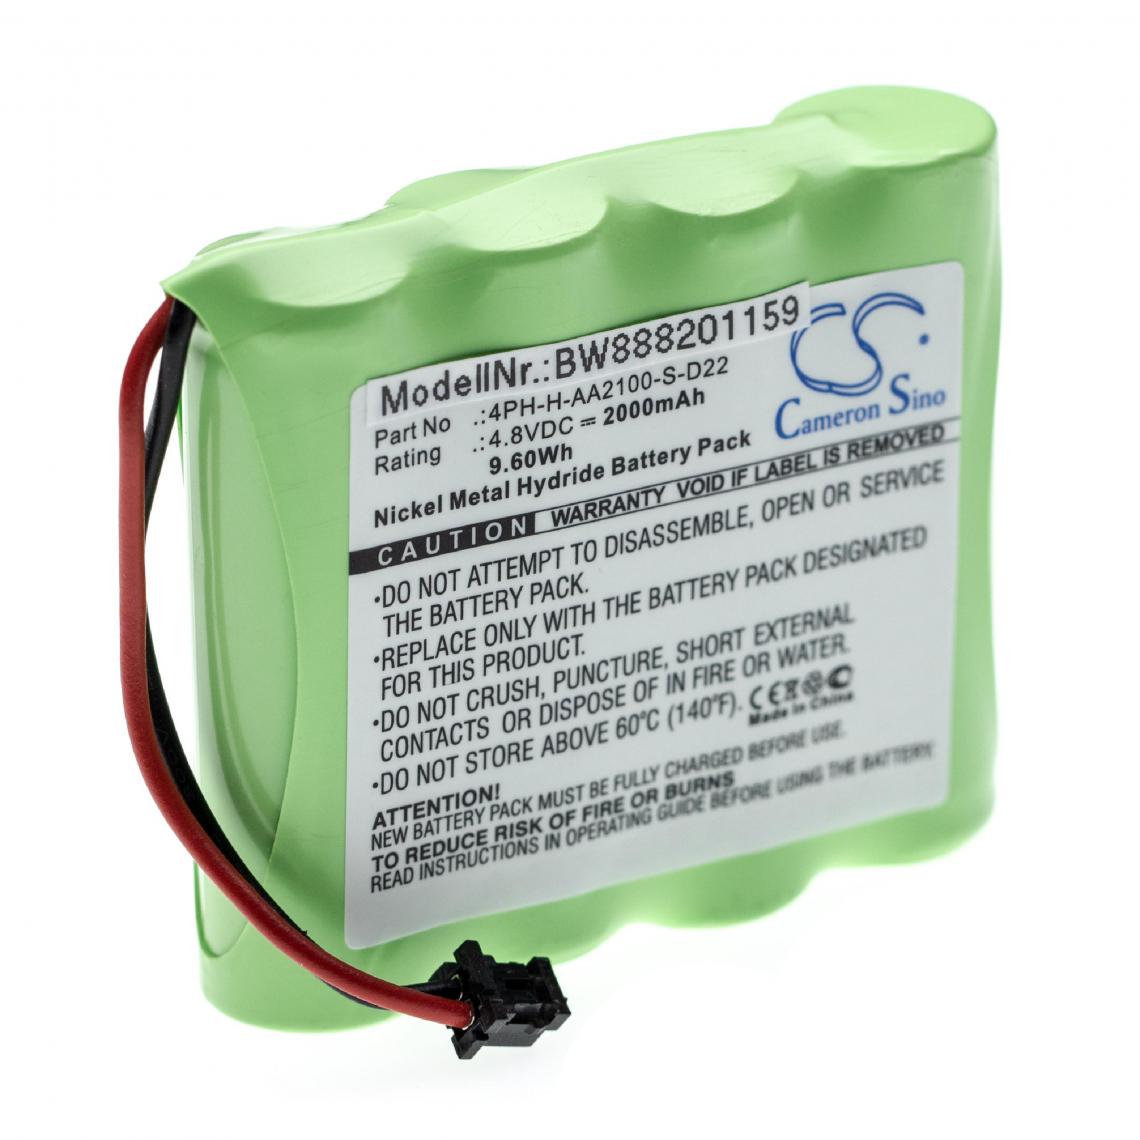 Vhbw - vhbw batterie remplace DSC 17000153, 4PH-H-AA2100-S-D22, BATT2148V pour alarme maison/contrôle home security (2000mAh, 4,8V, NiMH) - Autre appareil de mesure